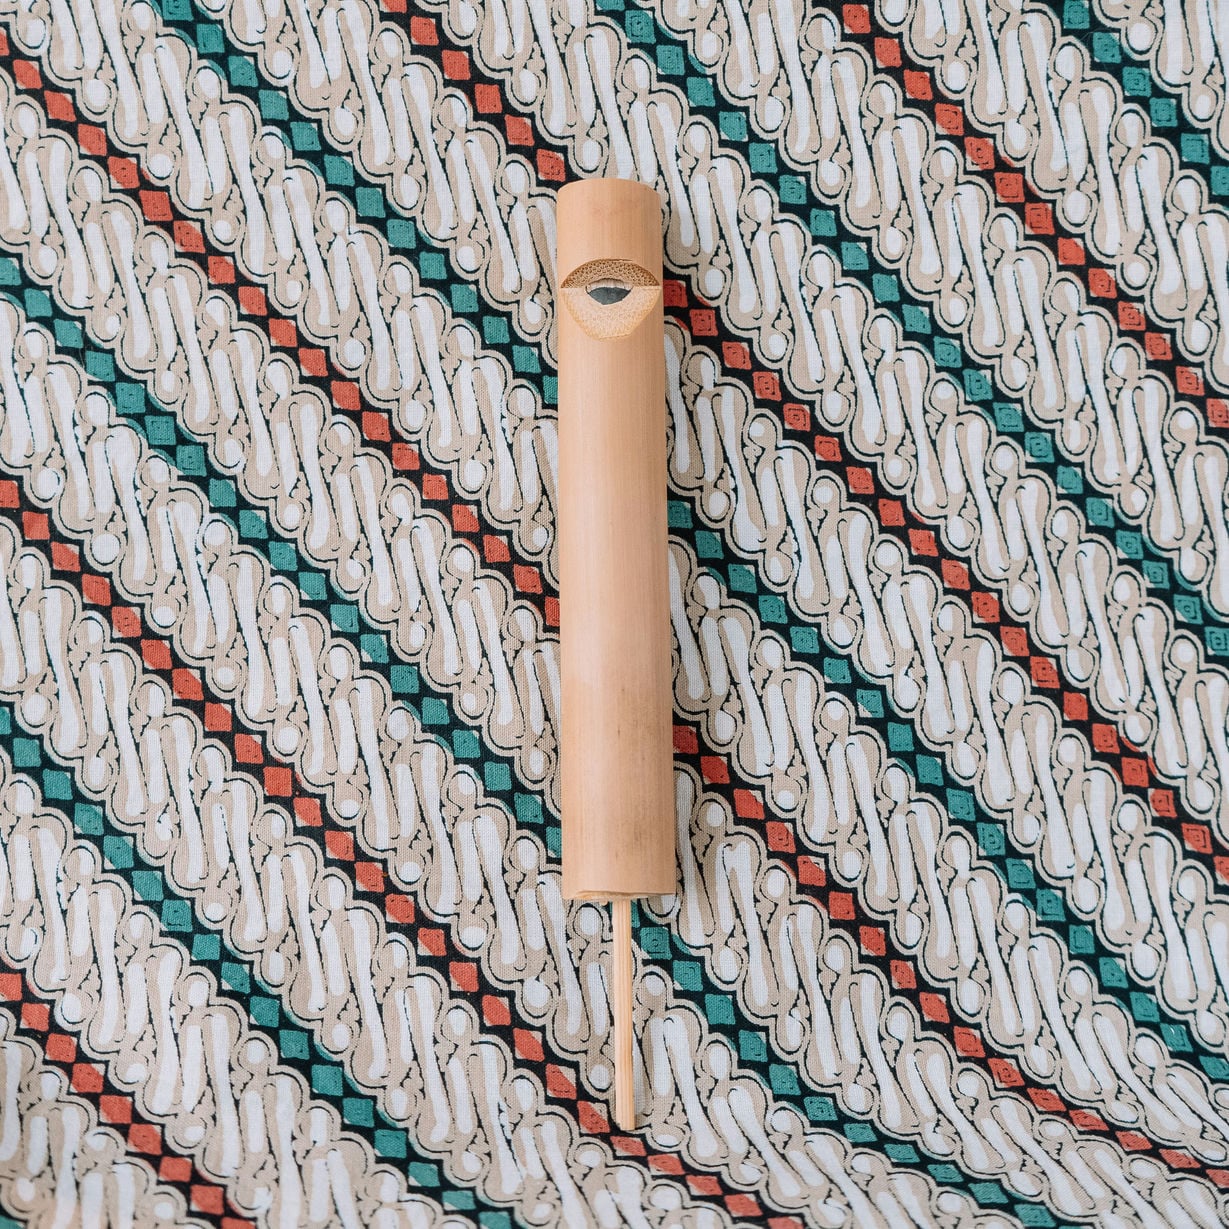 Leuk fluitje, gemaakt van bamboe. Door het stokje te bewegen tijdens het fluiten krijg je verschillende toonhoogtes te horen. 